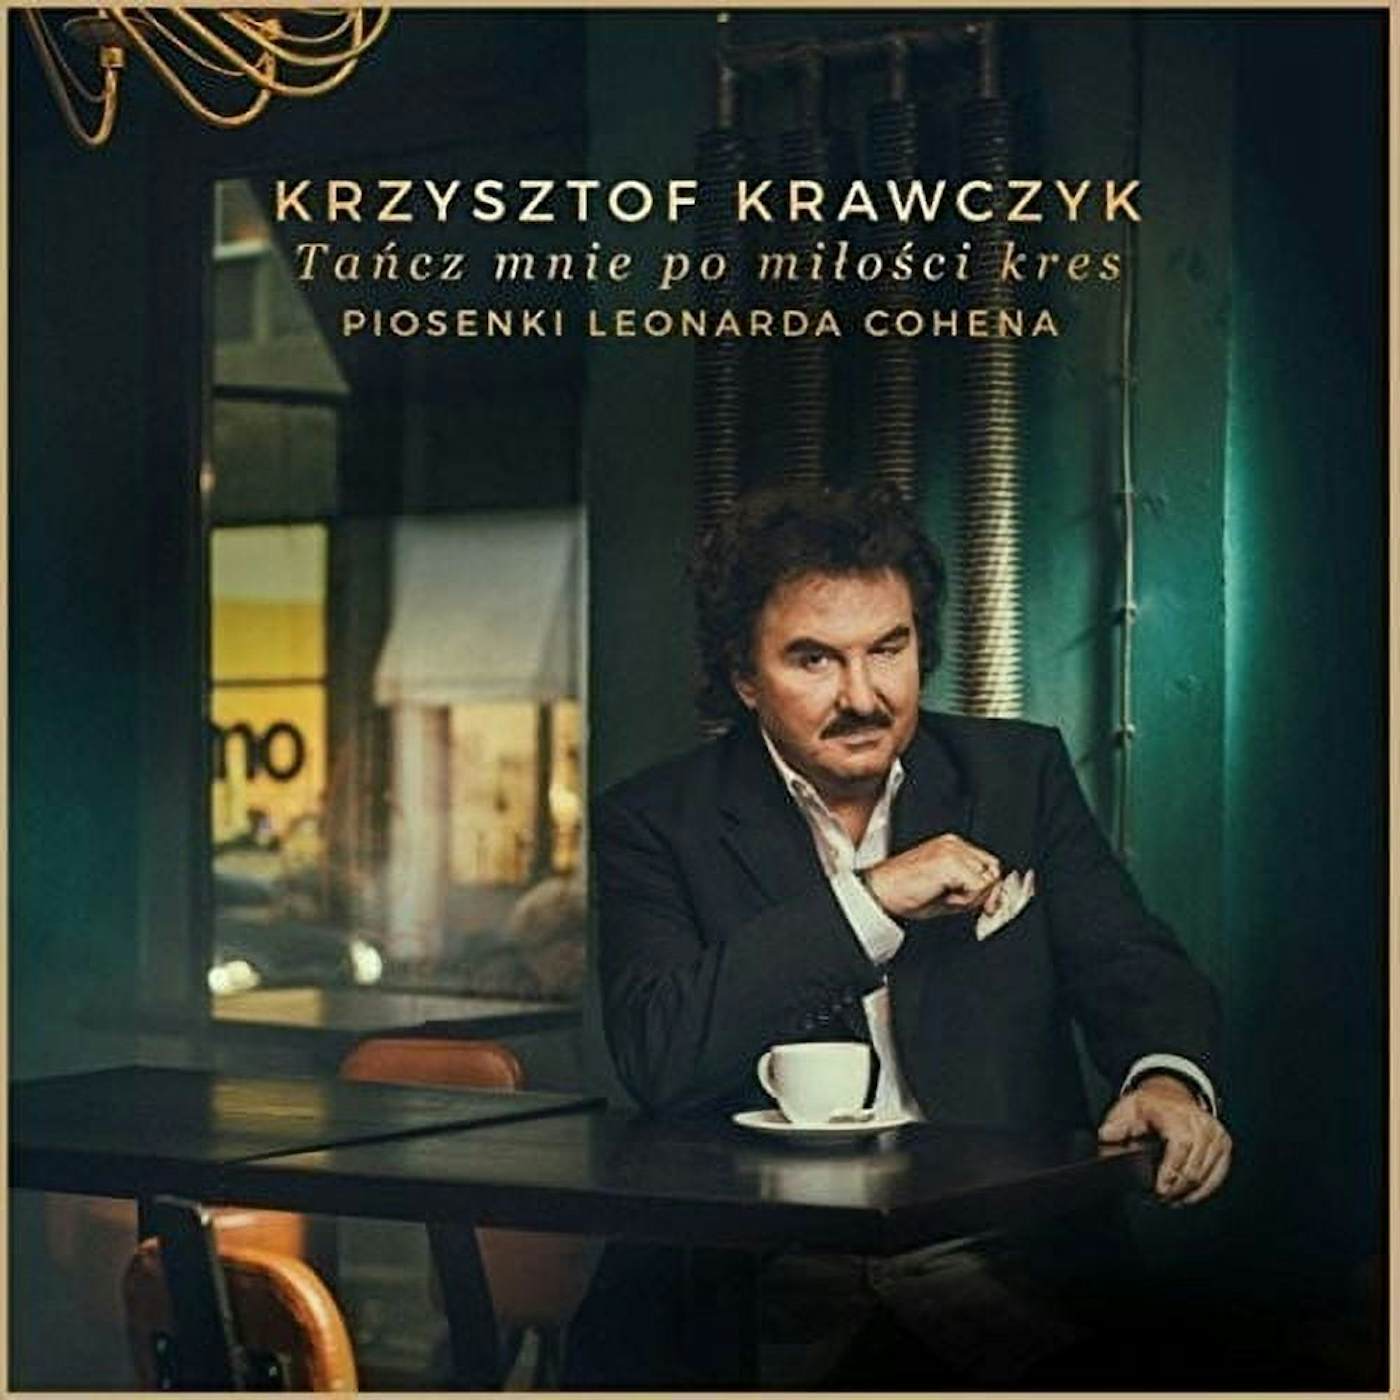 Krzysztof Krawczyk TANCZ MNIE PO MILOSCI KRES. PIOSENKI LEO Vinyl Record